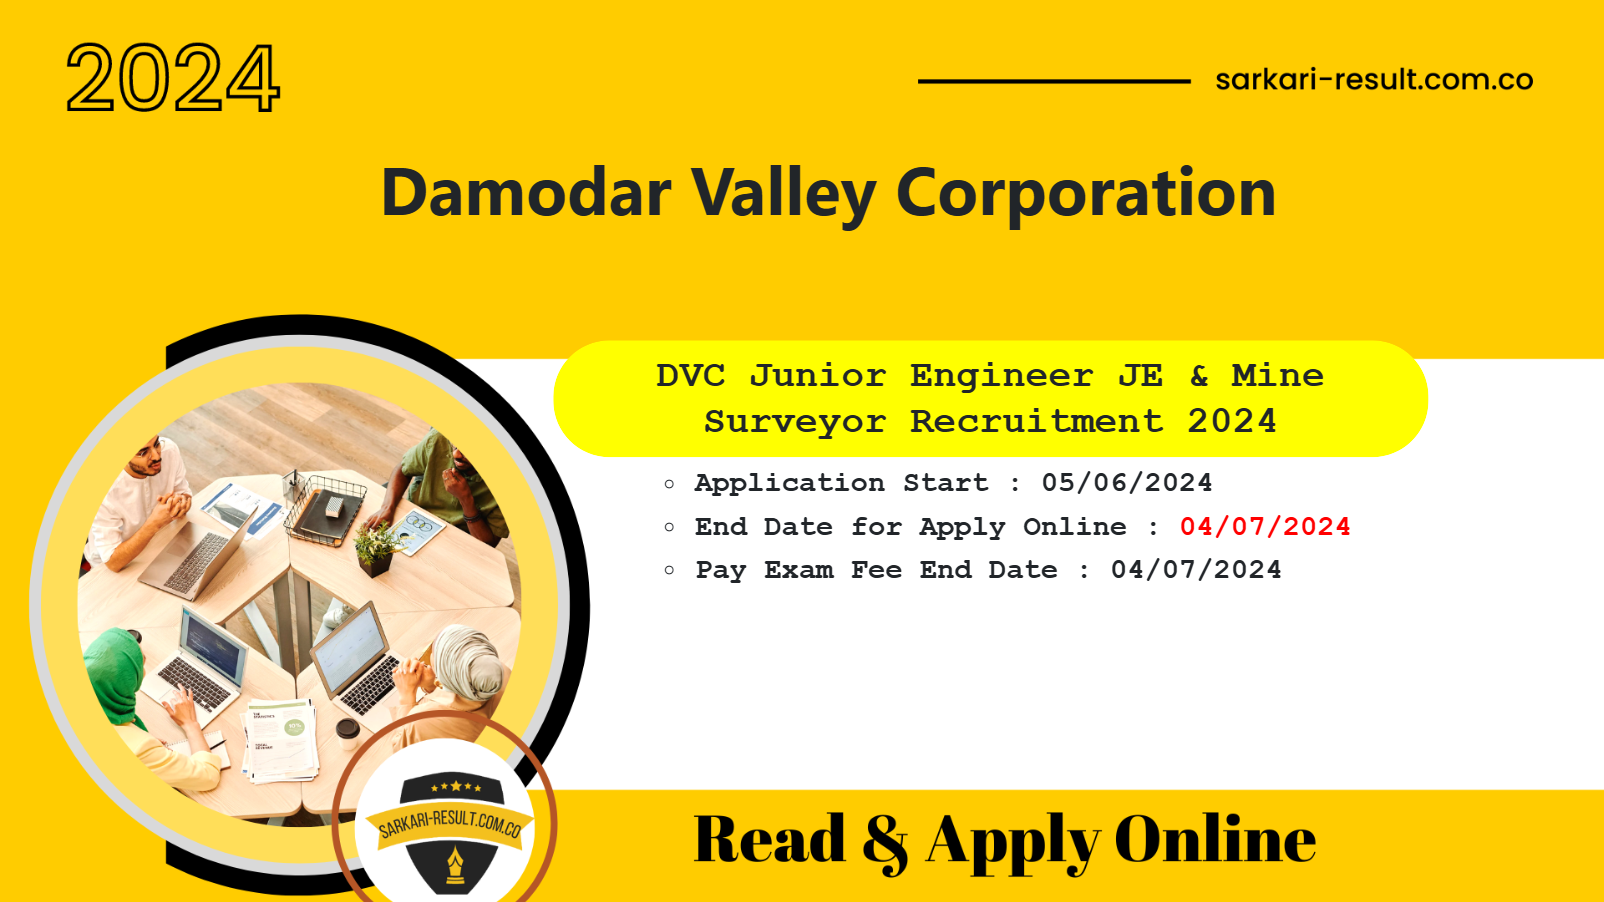 Damodar Valley Corporation DVC Junior Engineer Online Form 2024